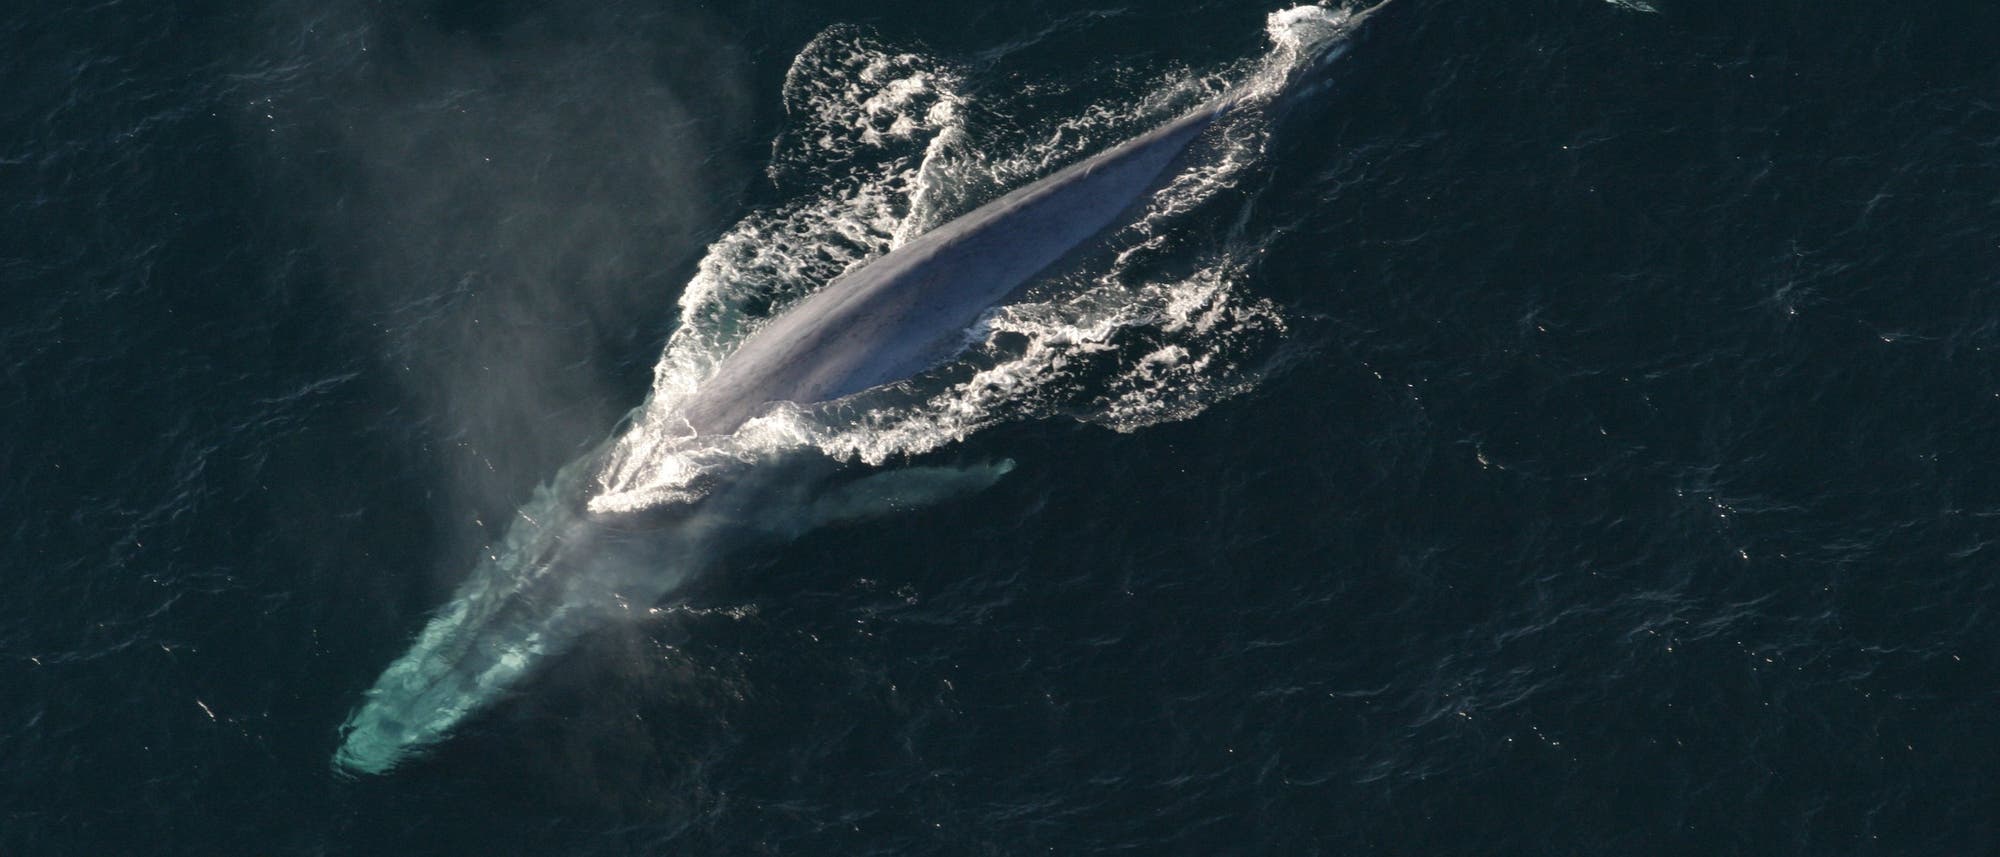 Blauwal - größer ist heute keiner